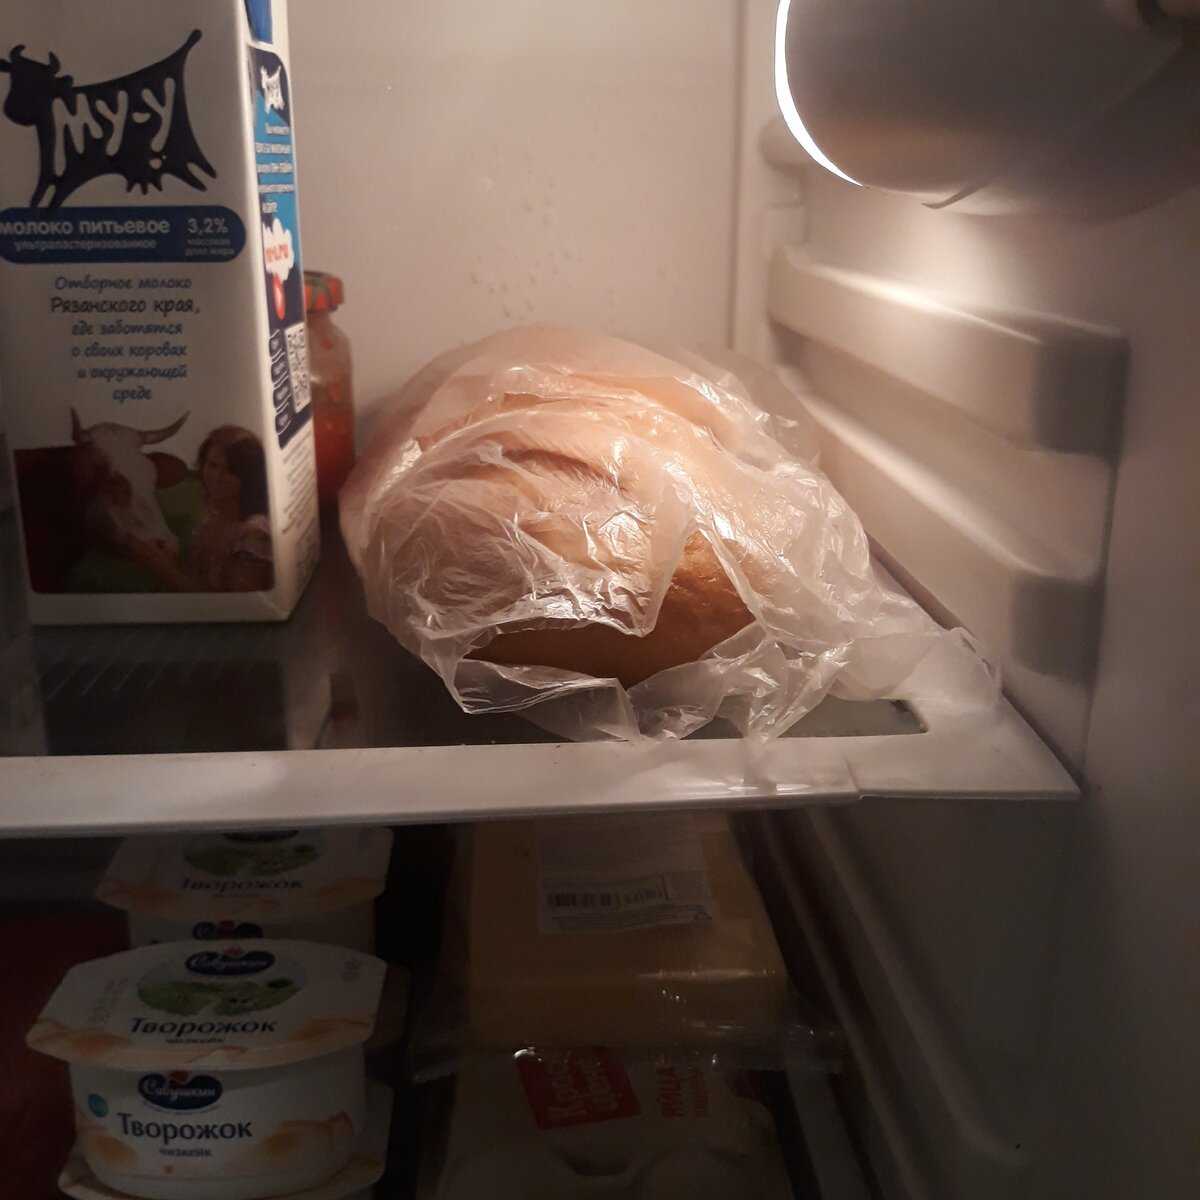 Можно ли держать хлеб в холодильнике?